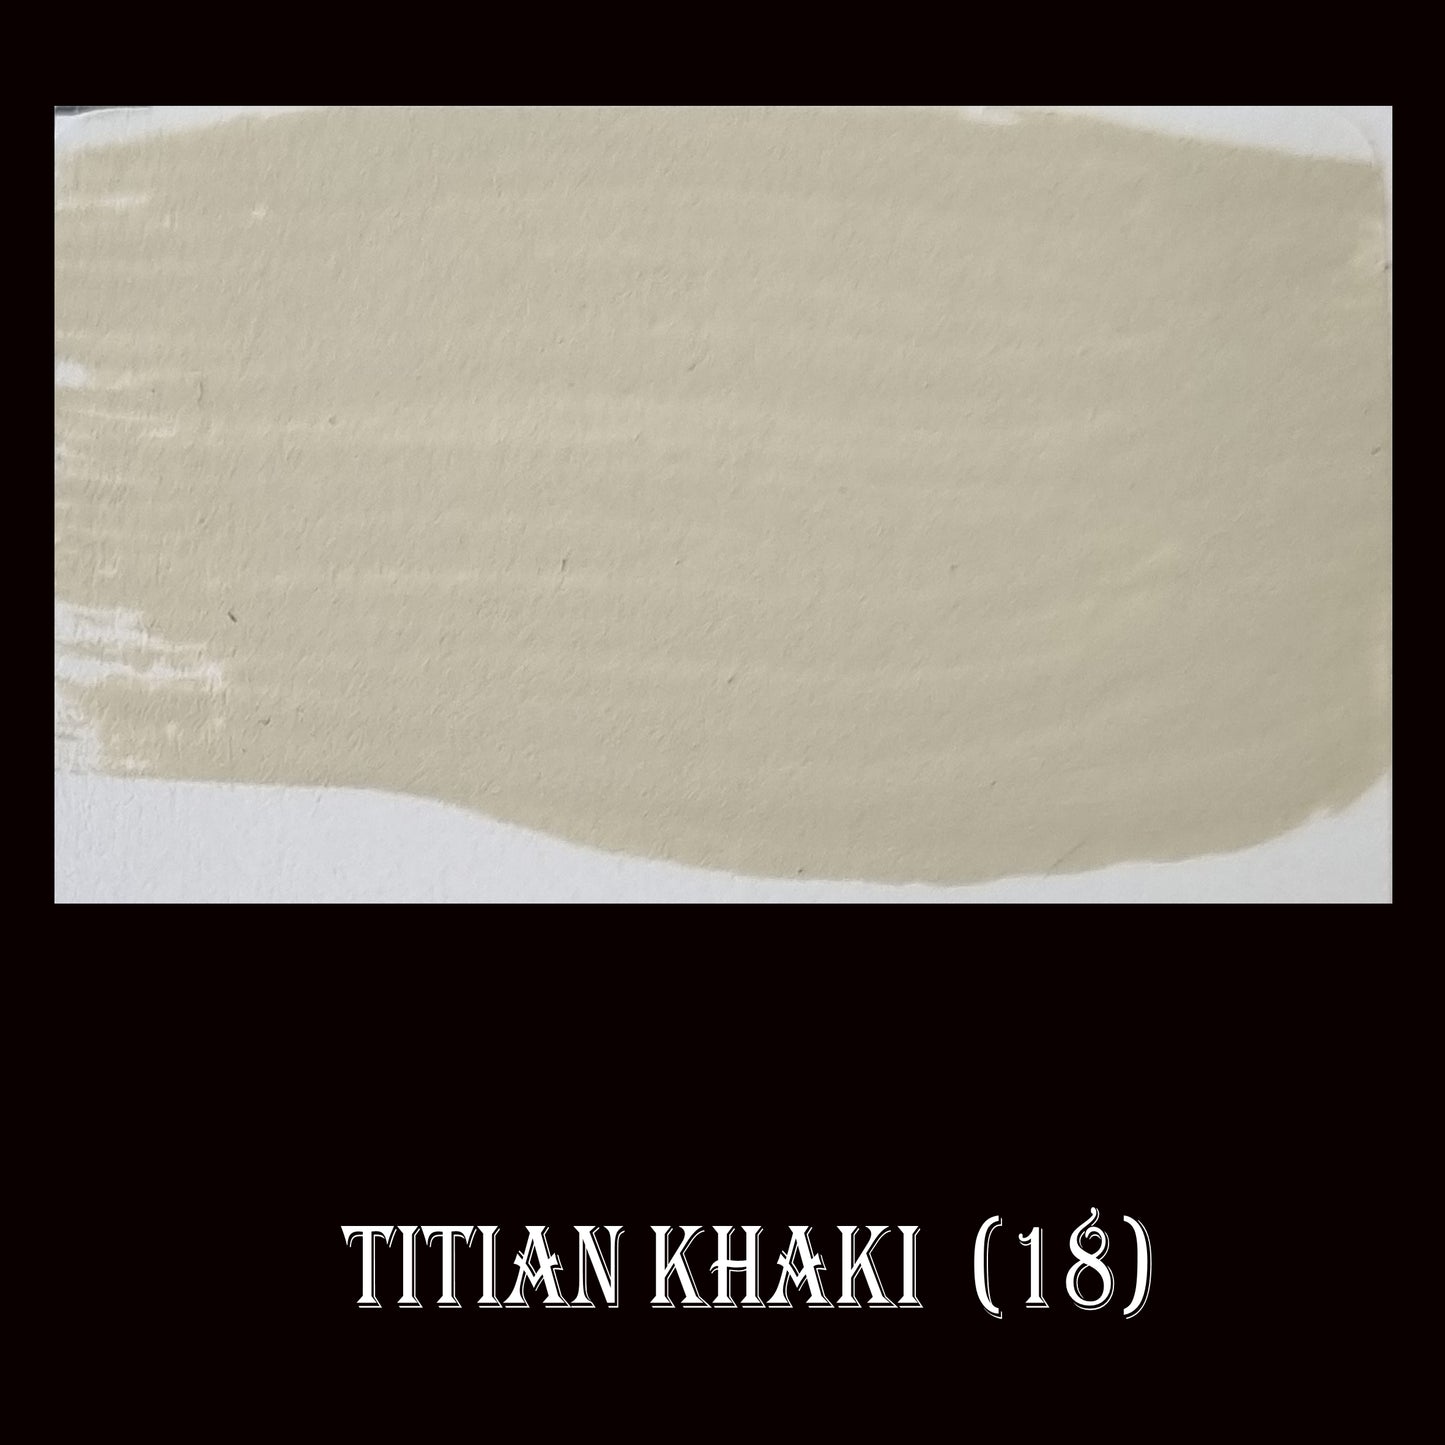 18 Chalky Finish Paint Titian Khaki - Da Vinci Chalk Paint & Rustic home decor